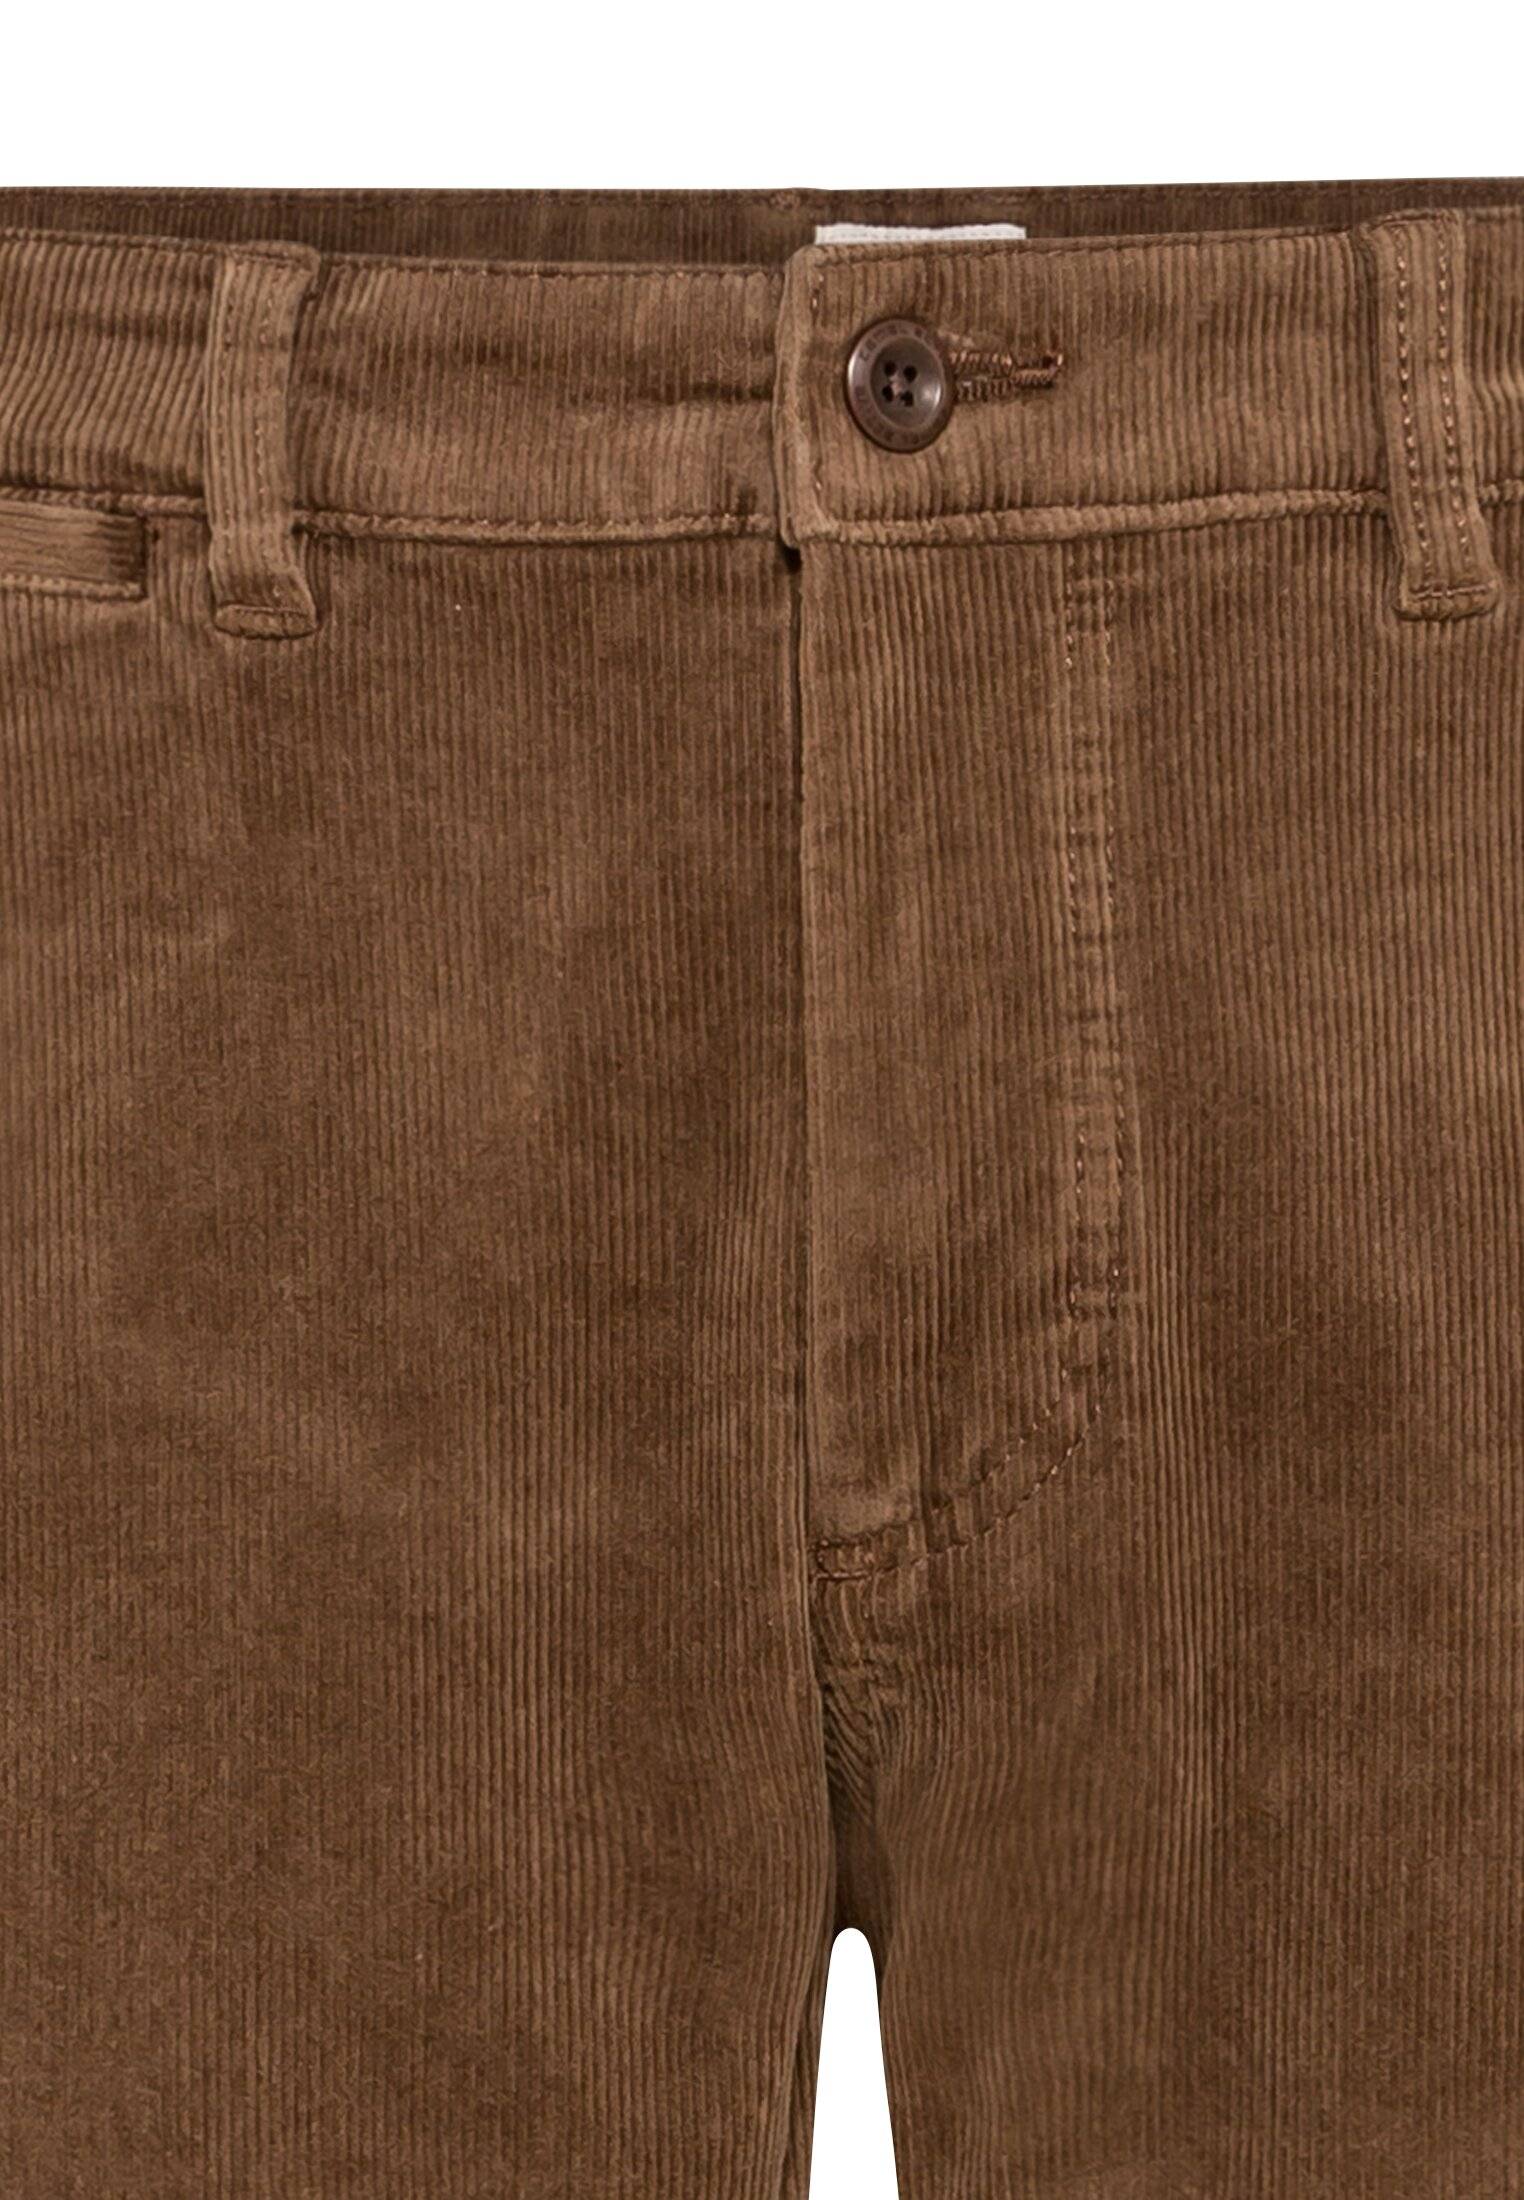 Мужские брюки Camel Active, коричневые, цвет коричневый, размер 34 - фото 3